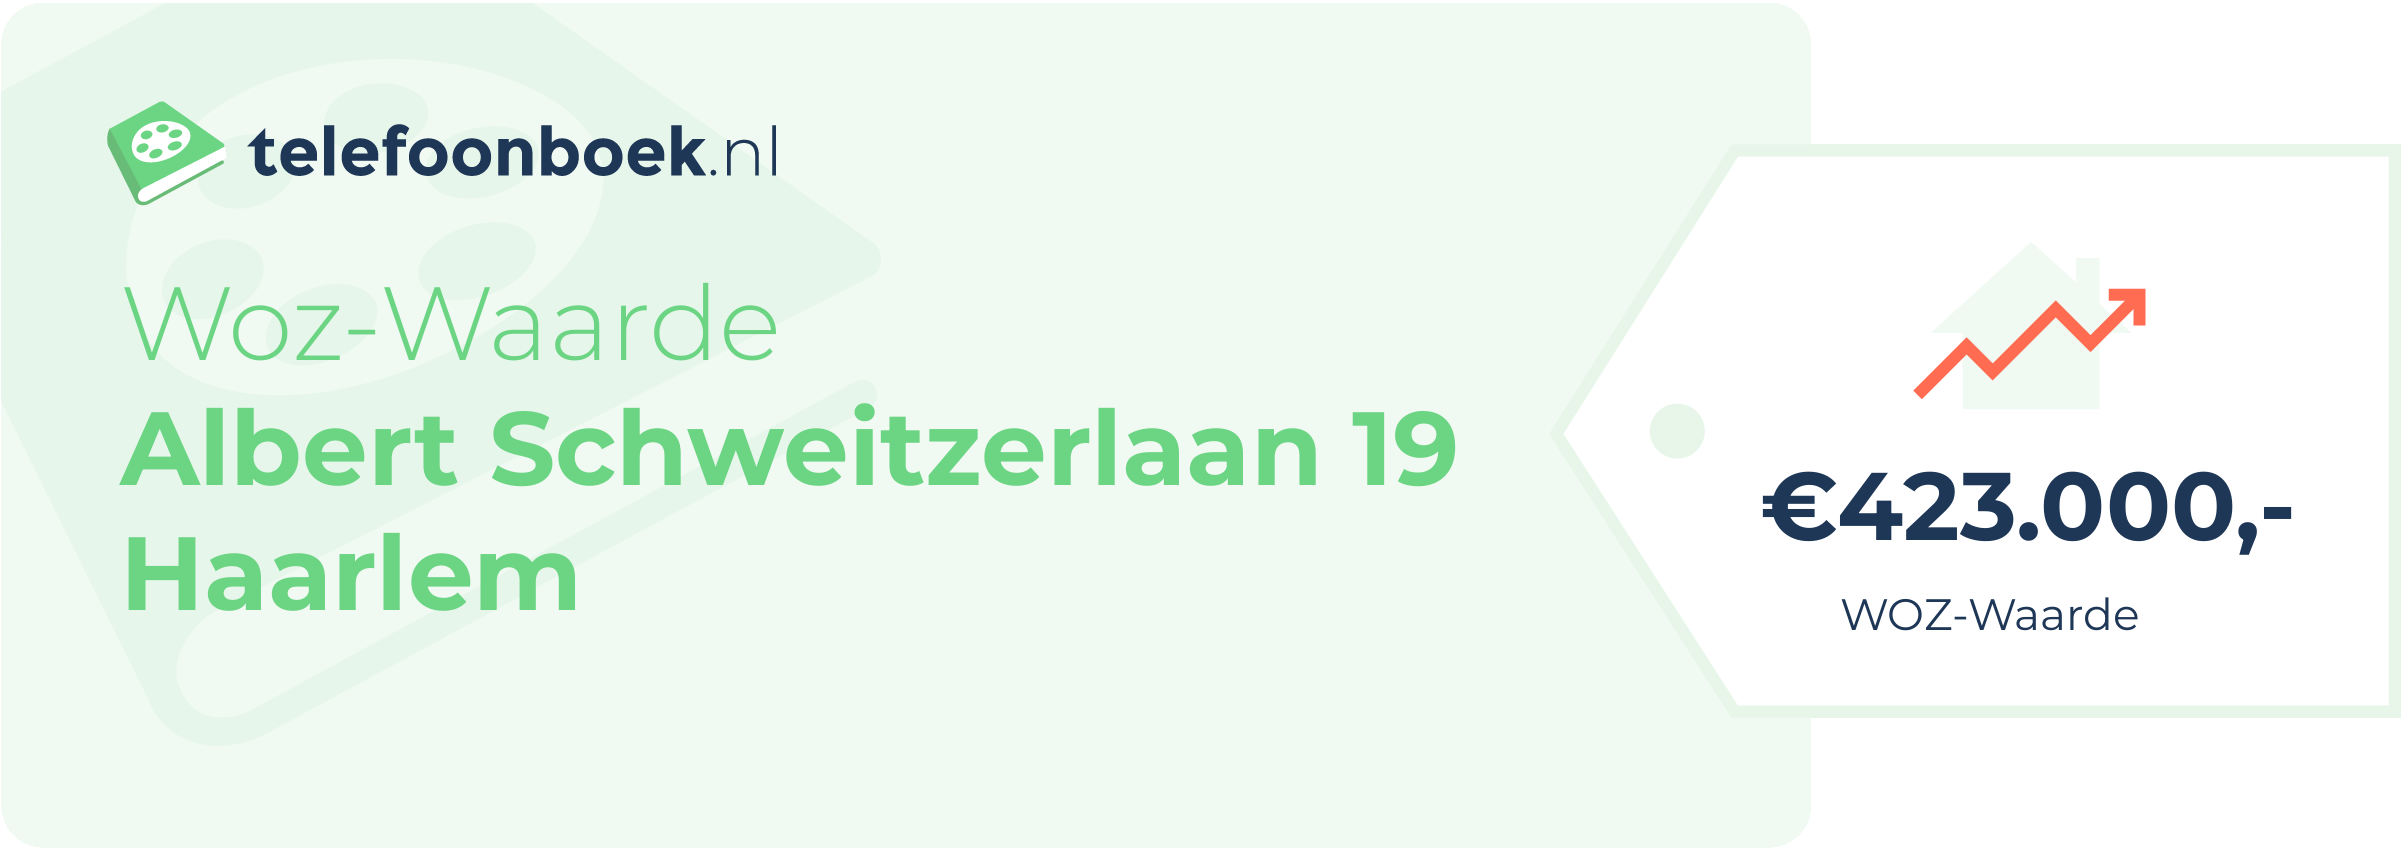 WOZ-waarde Albert Schweitzerlaan 19 Haarlem